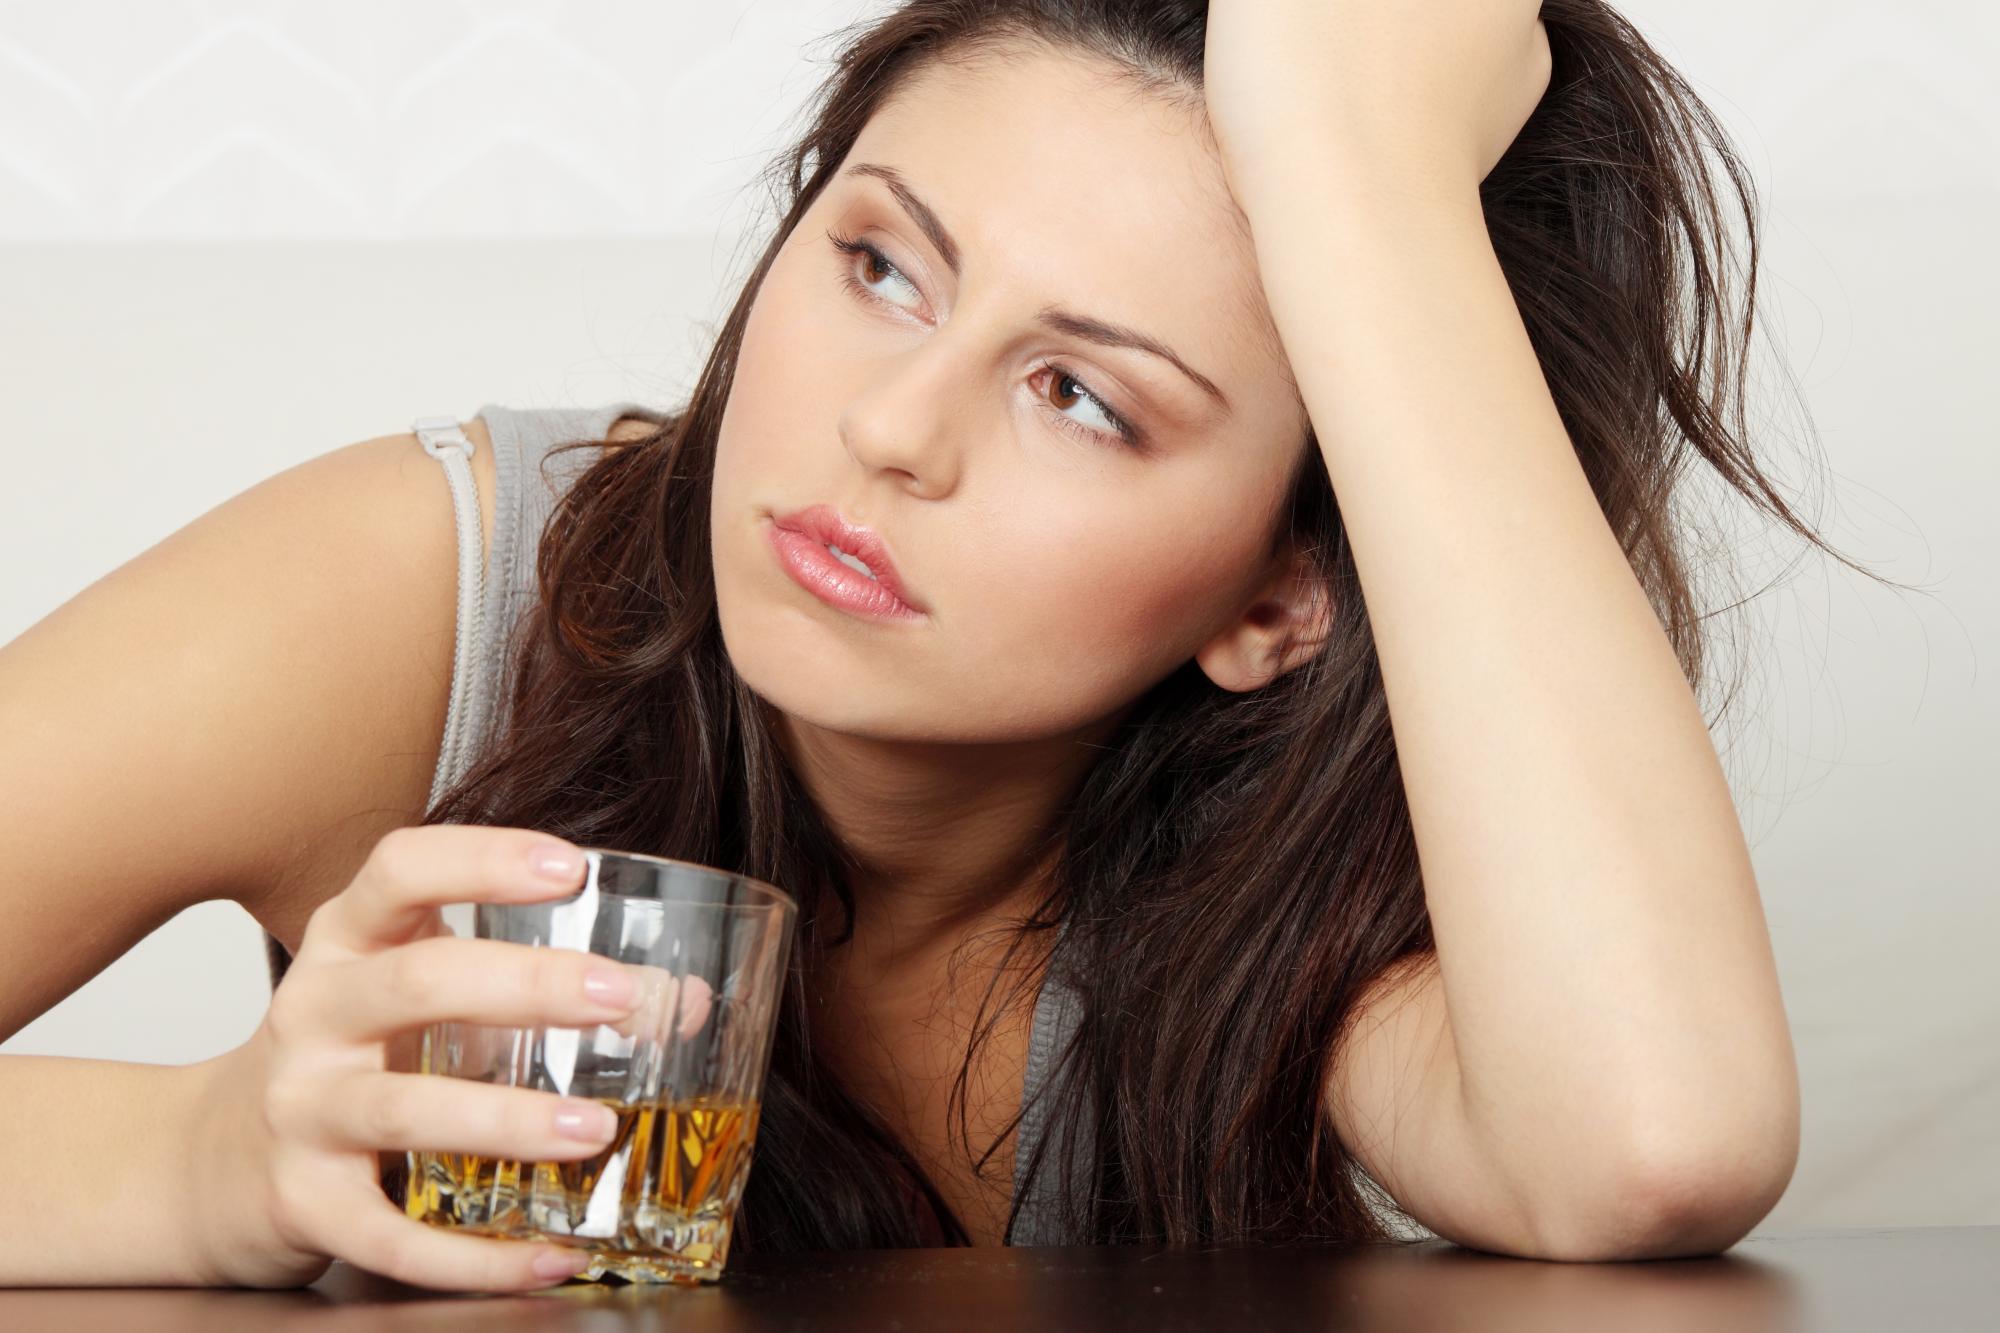   phụ nữ dễ bị viêm gan, bệnh tim và tổn thương não nhiều hơn khi uống rượu (Ảnh minh họa)  